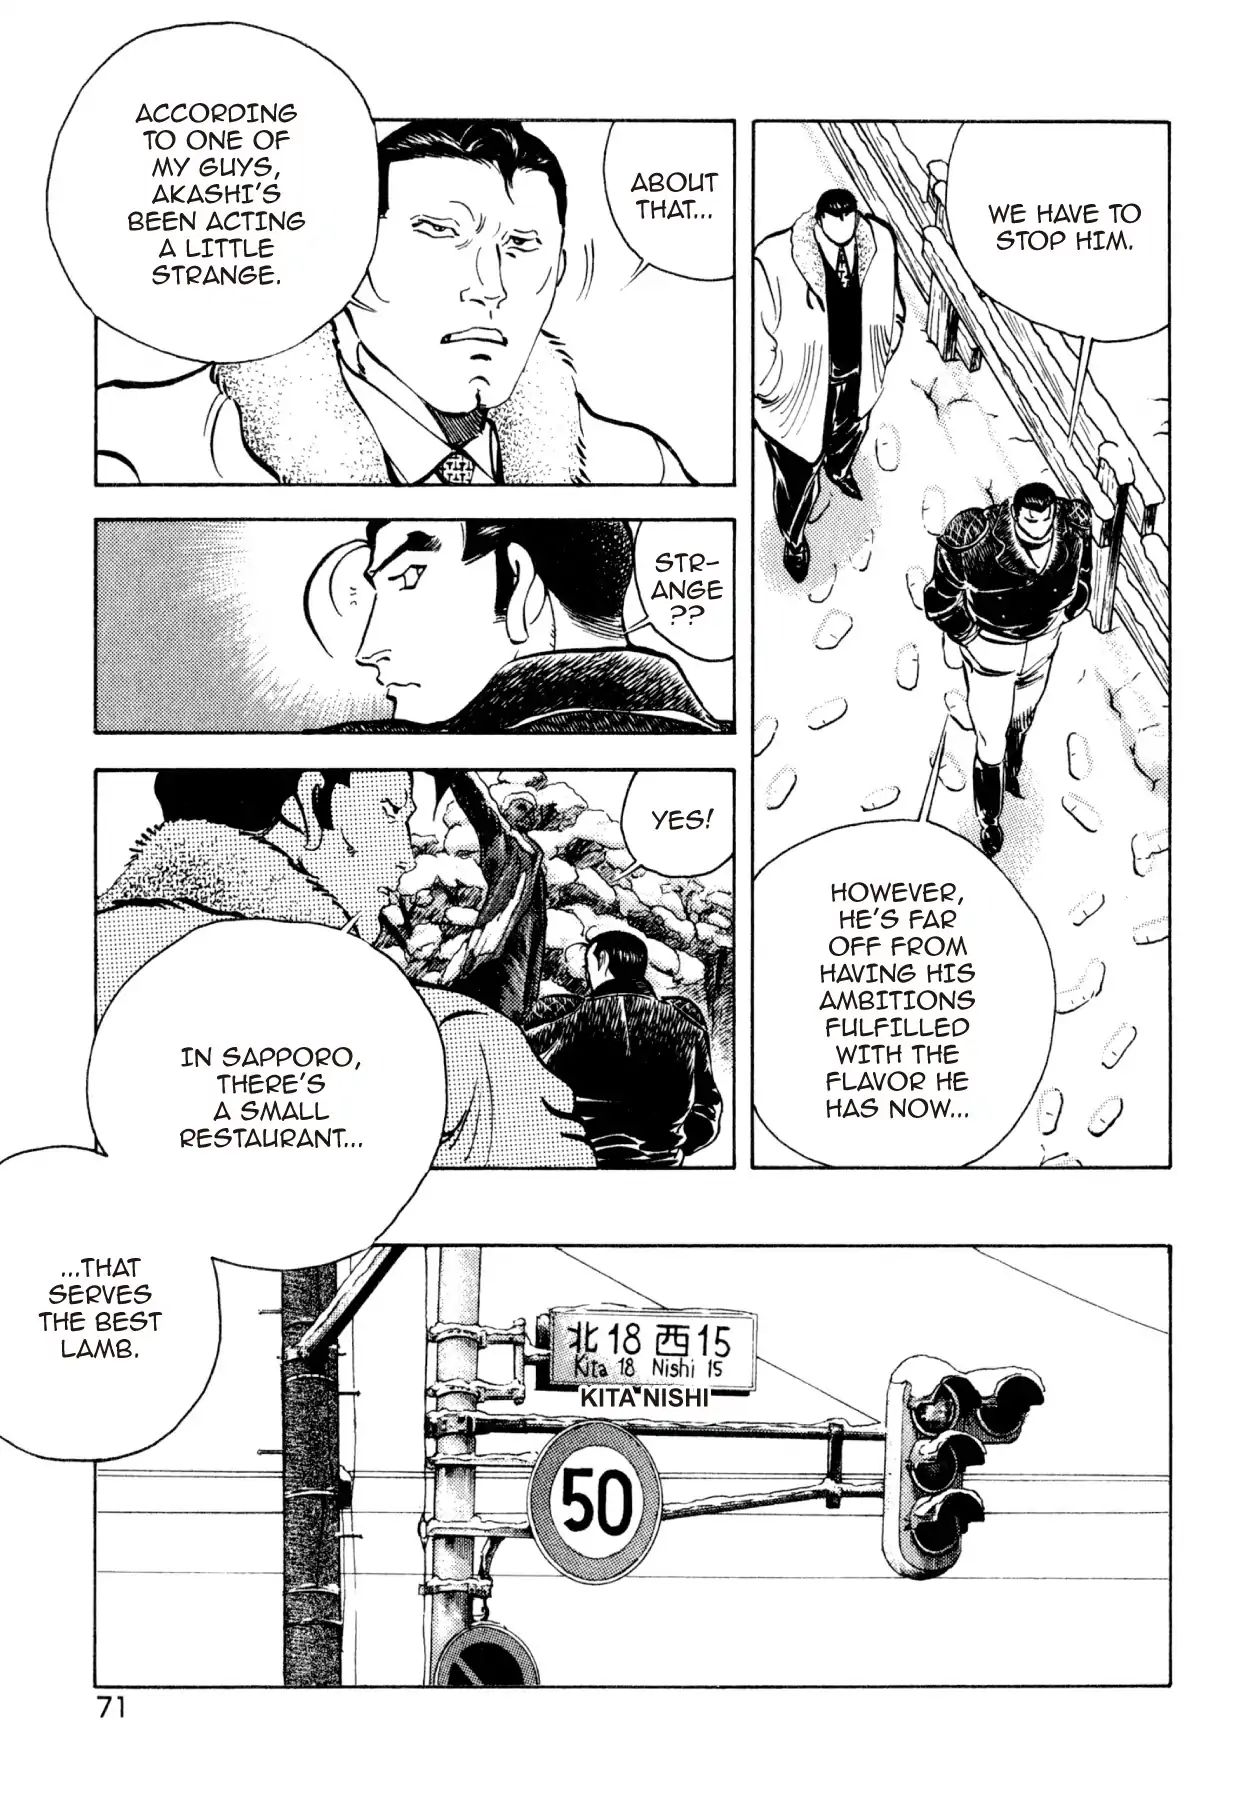 Shoku King VOL.22 CHAPTER 198: AKASHI'S AMBITION